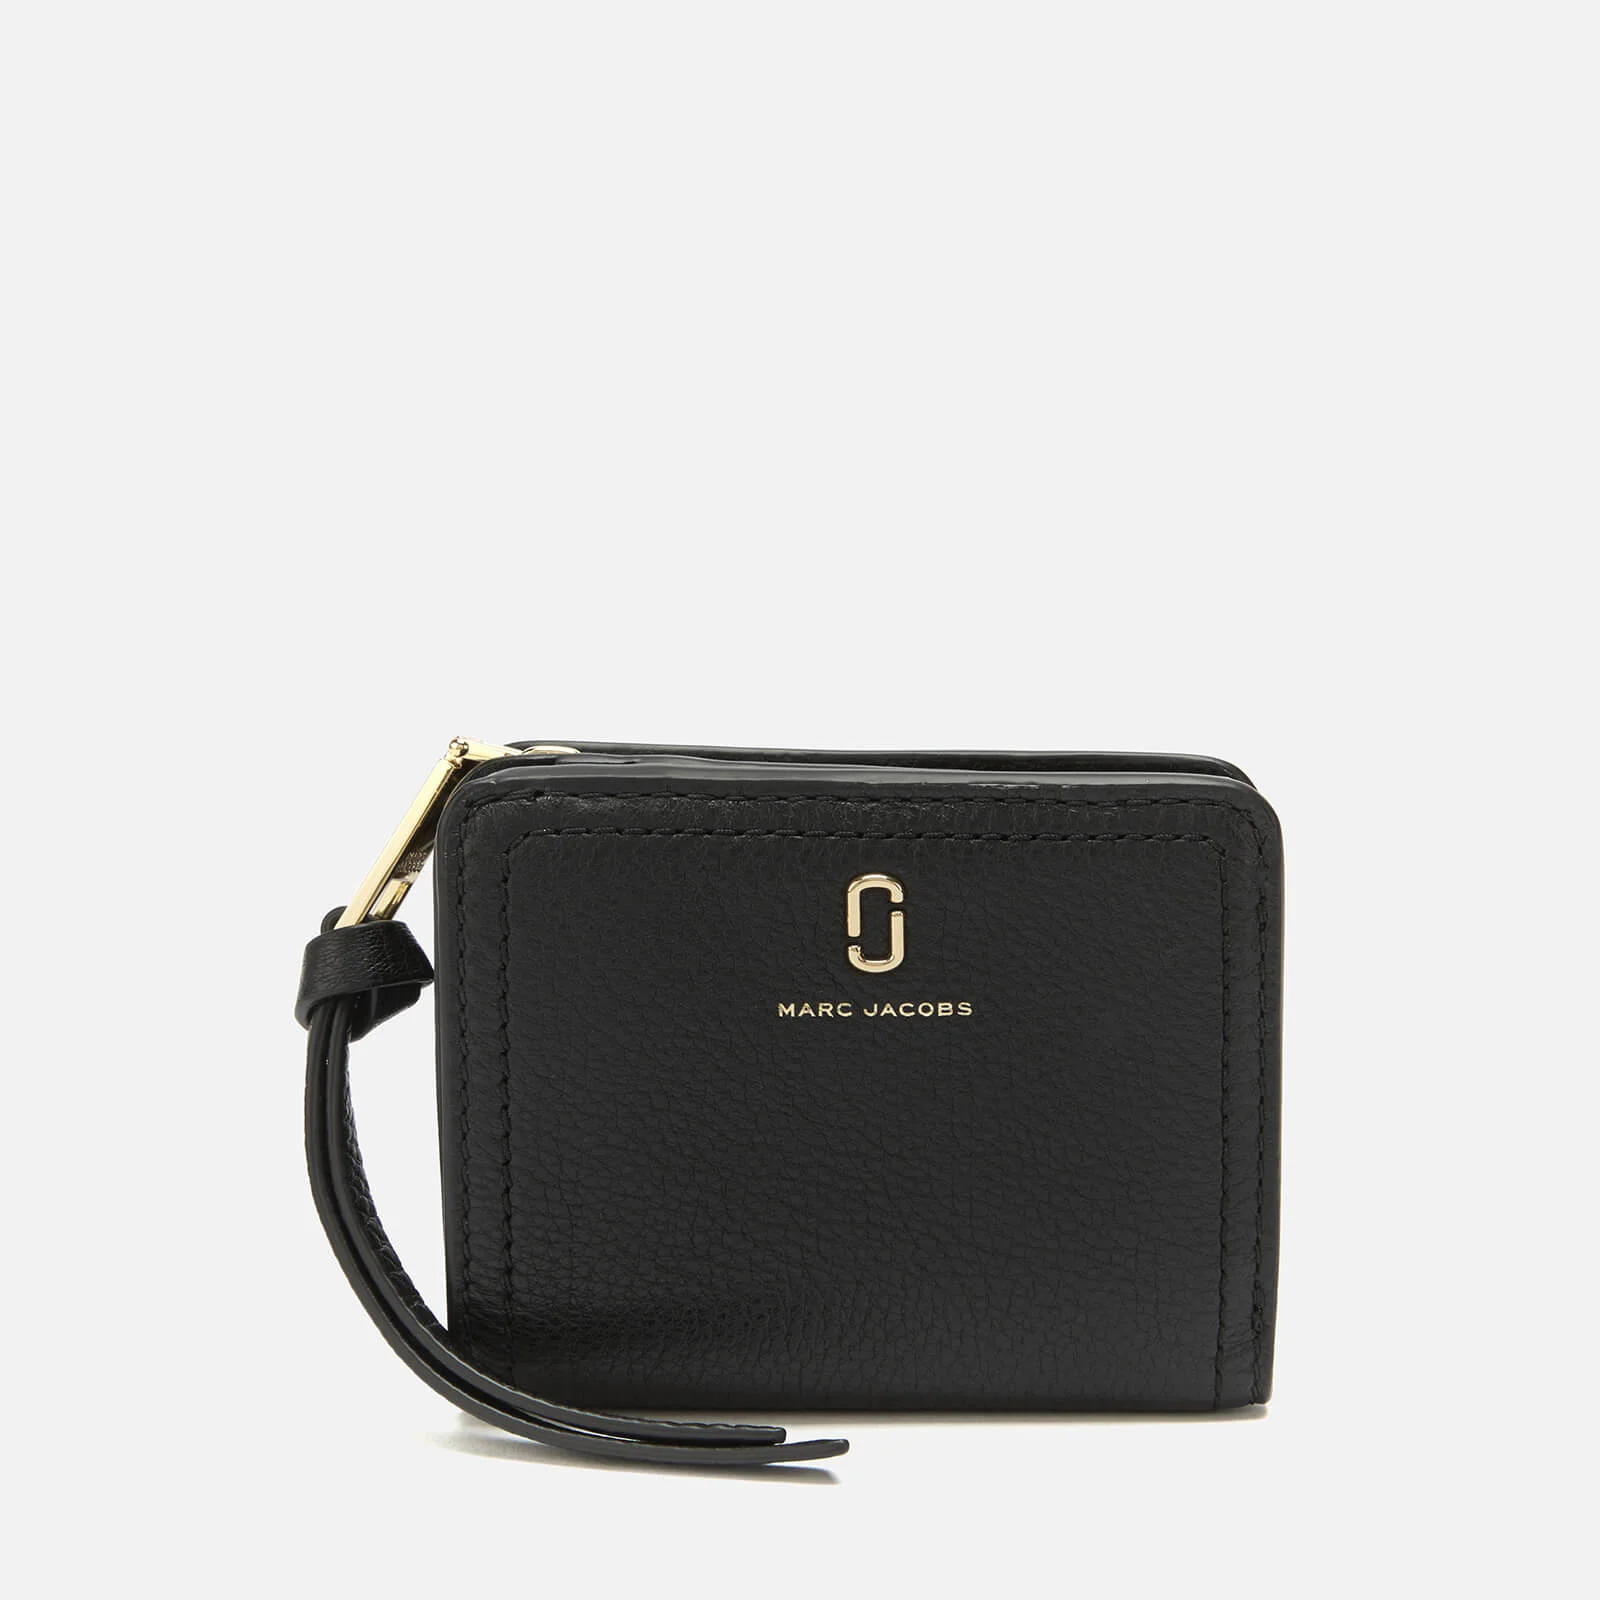 Marc Jacobs Women's Mini Compact Wallet - Black Image 1